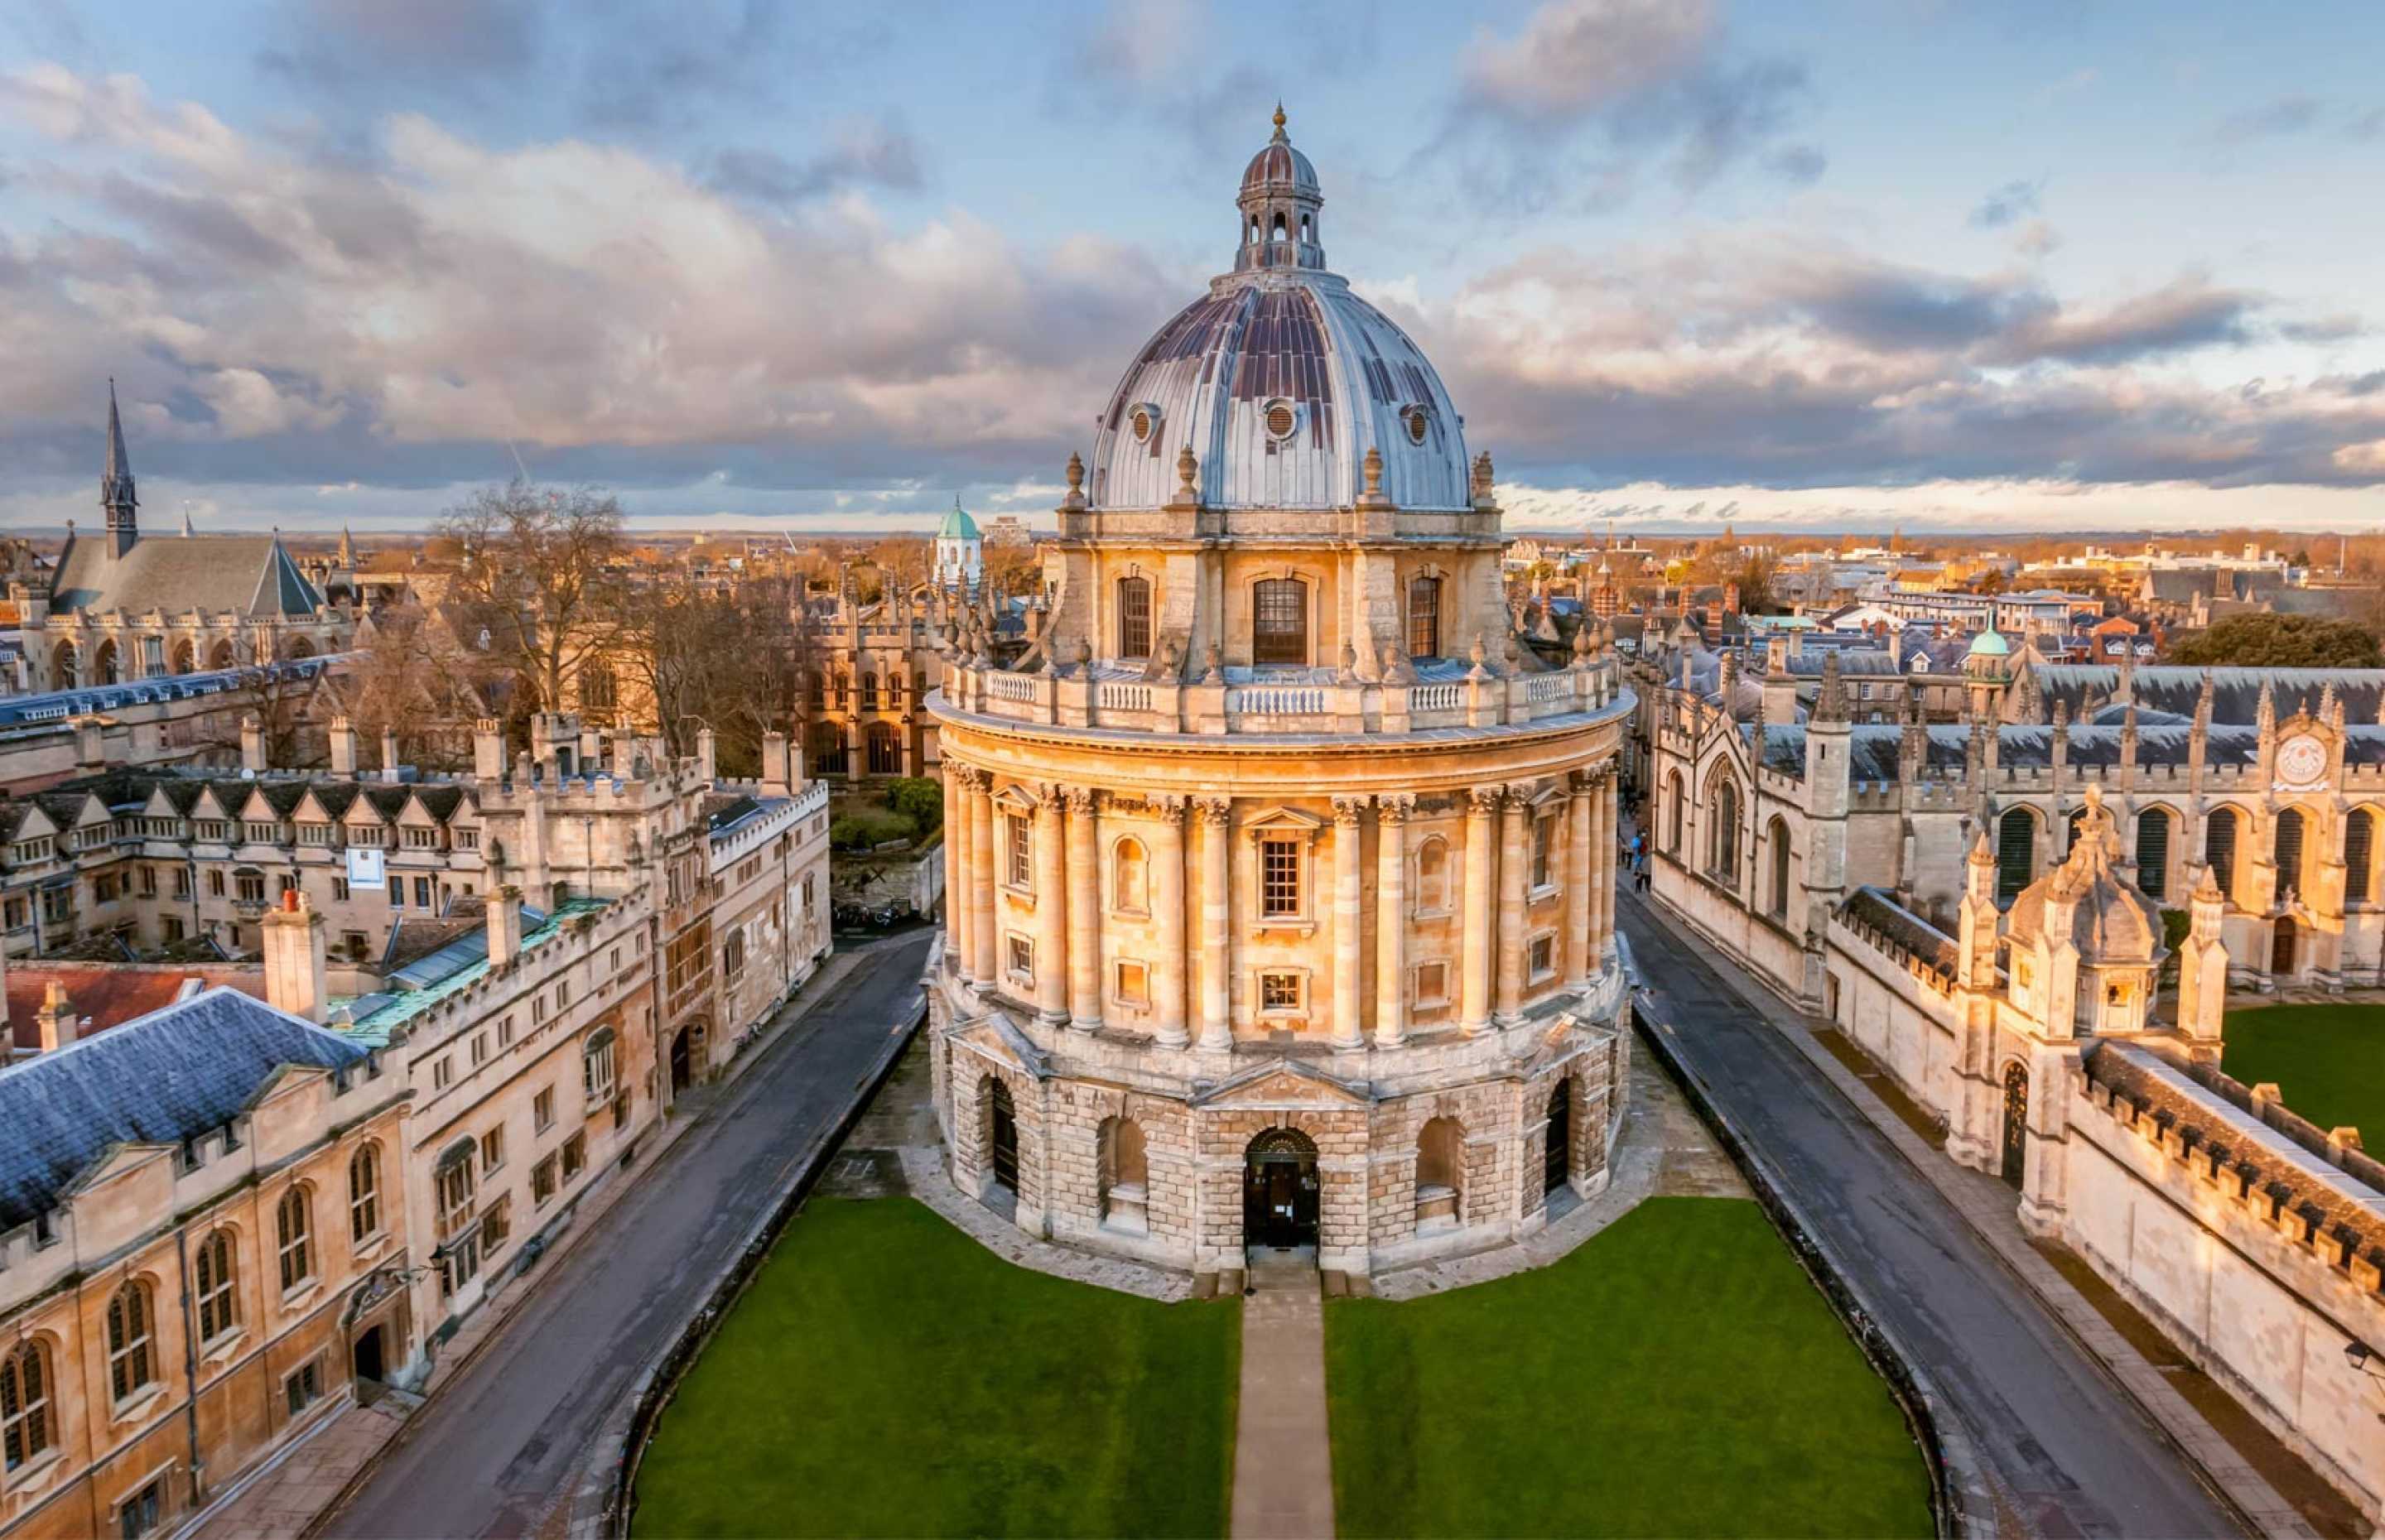 Dronenfoto mit dem Forschungsinstitut von Oxford University.